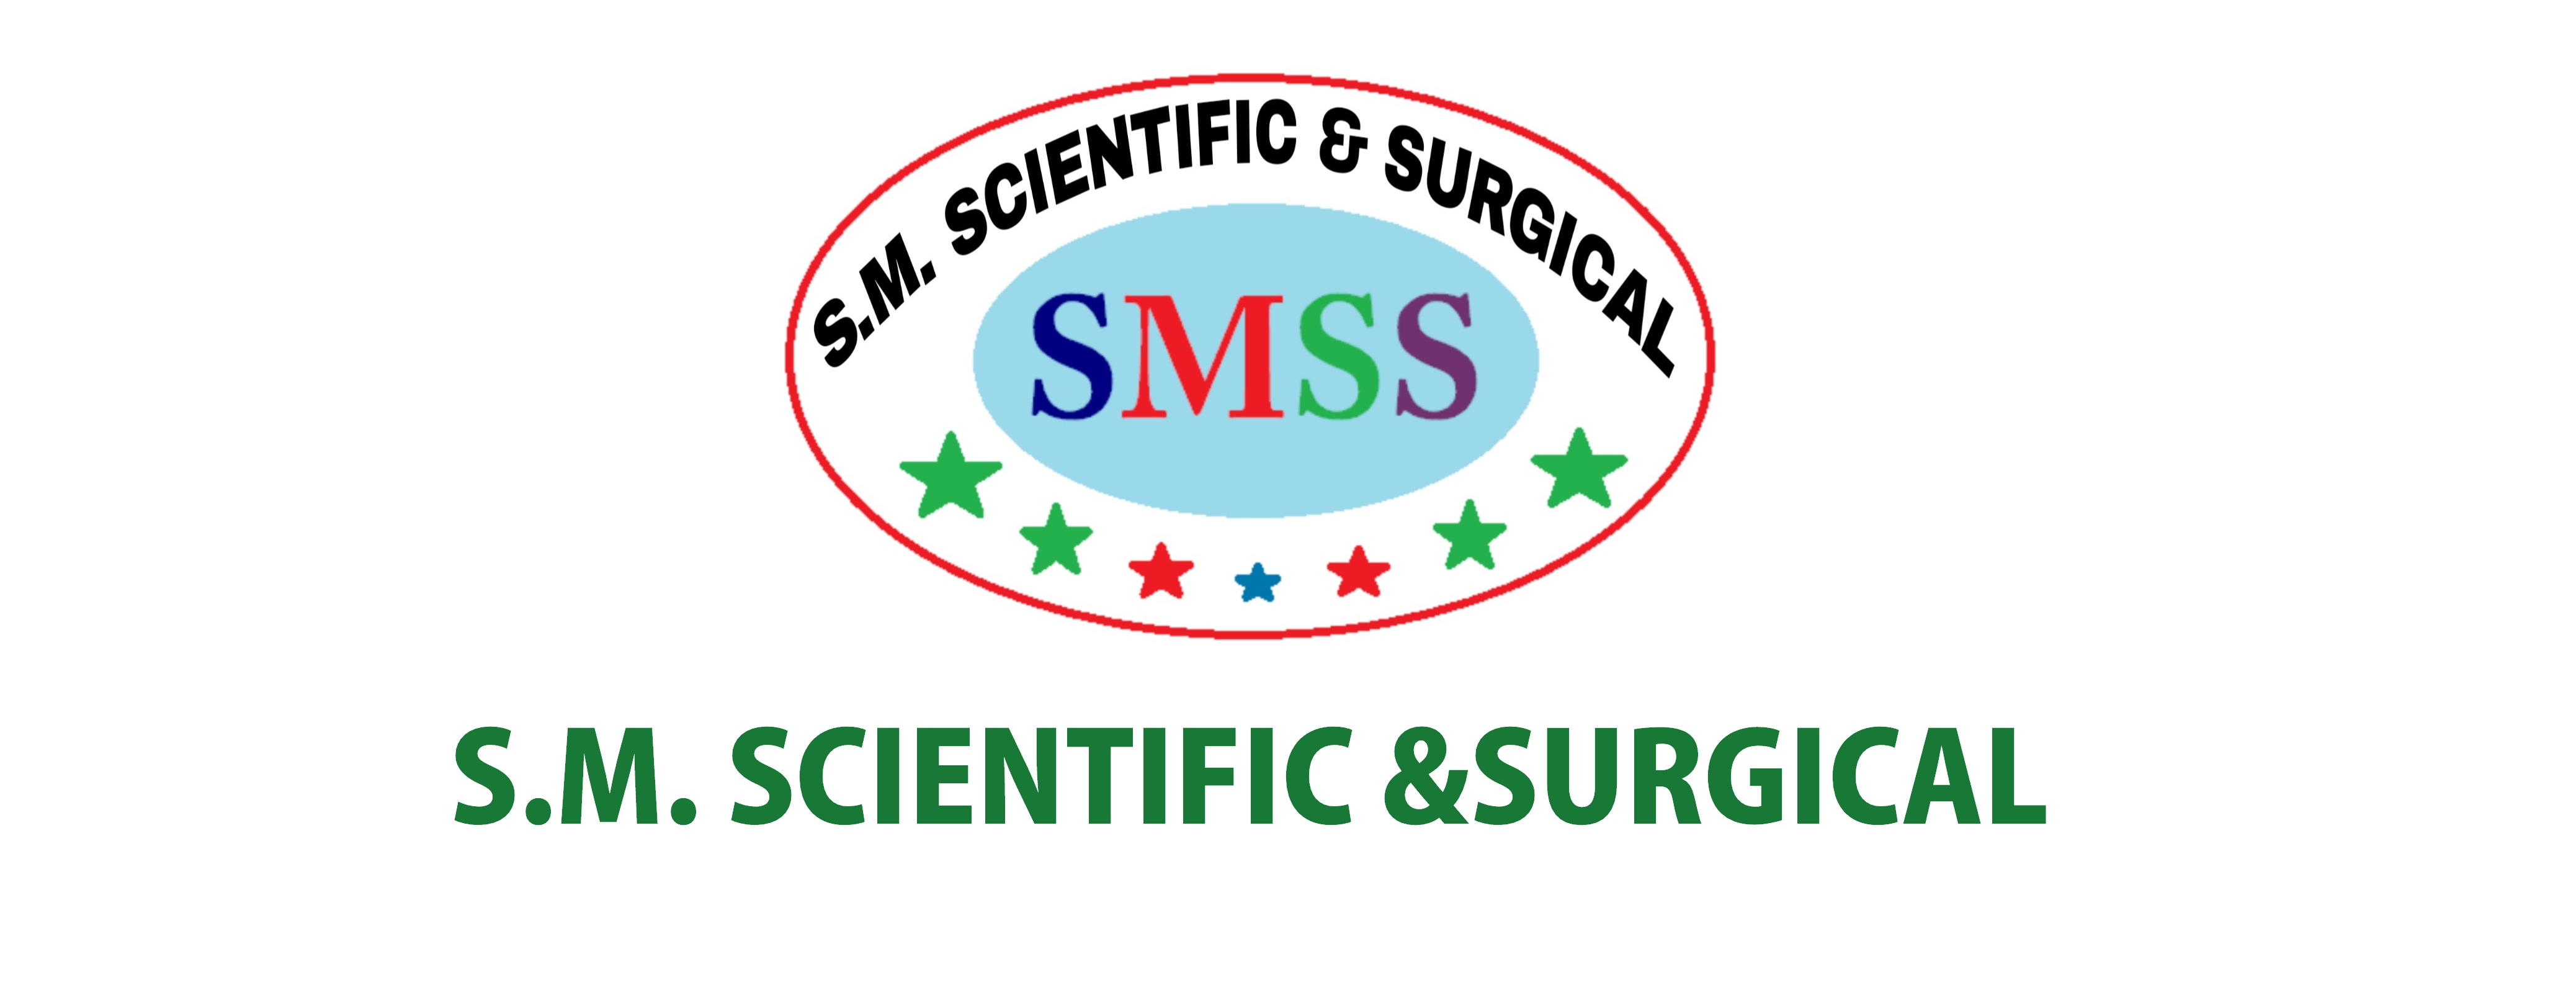 S.M.SCIENTIFIC & SURGICAL 